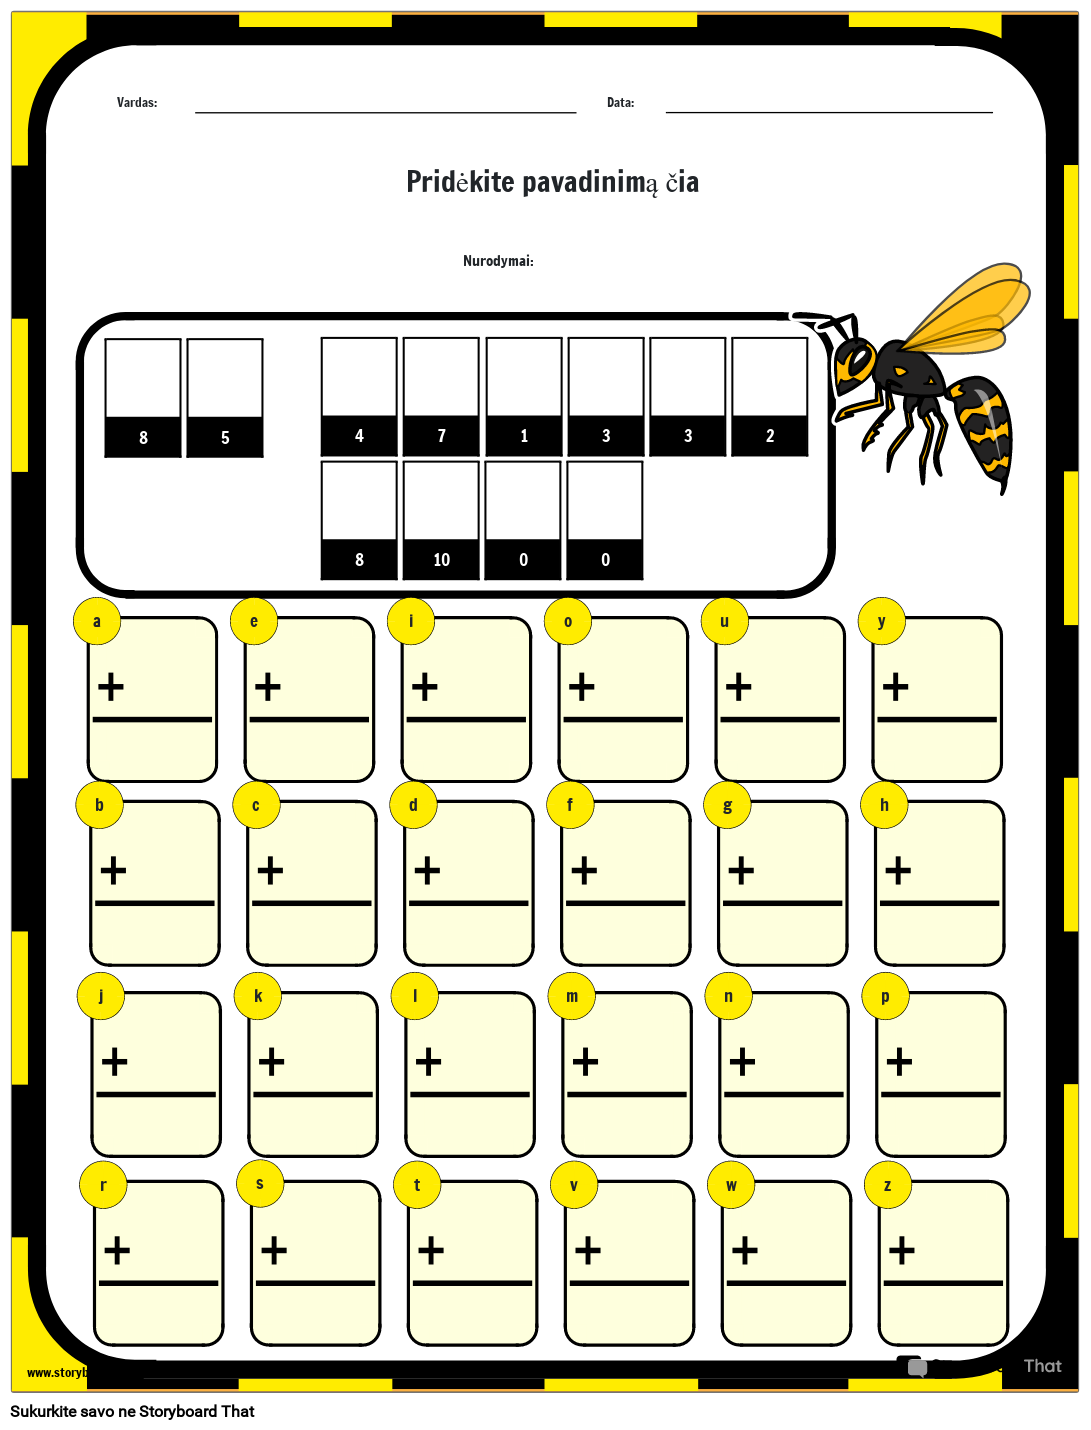 Kaip bitės eina į mokyklą – matematikos mįslės darbalapis